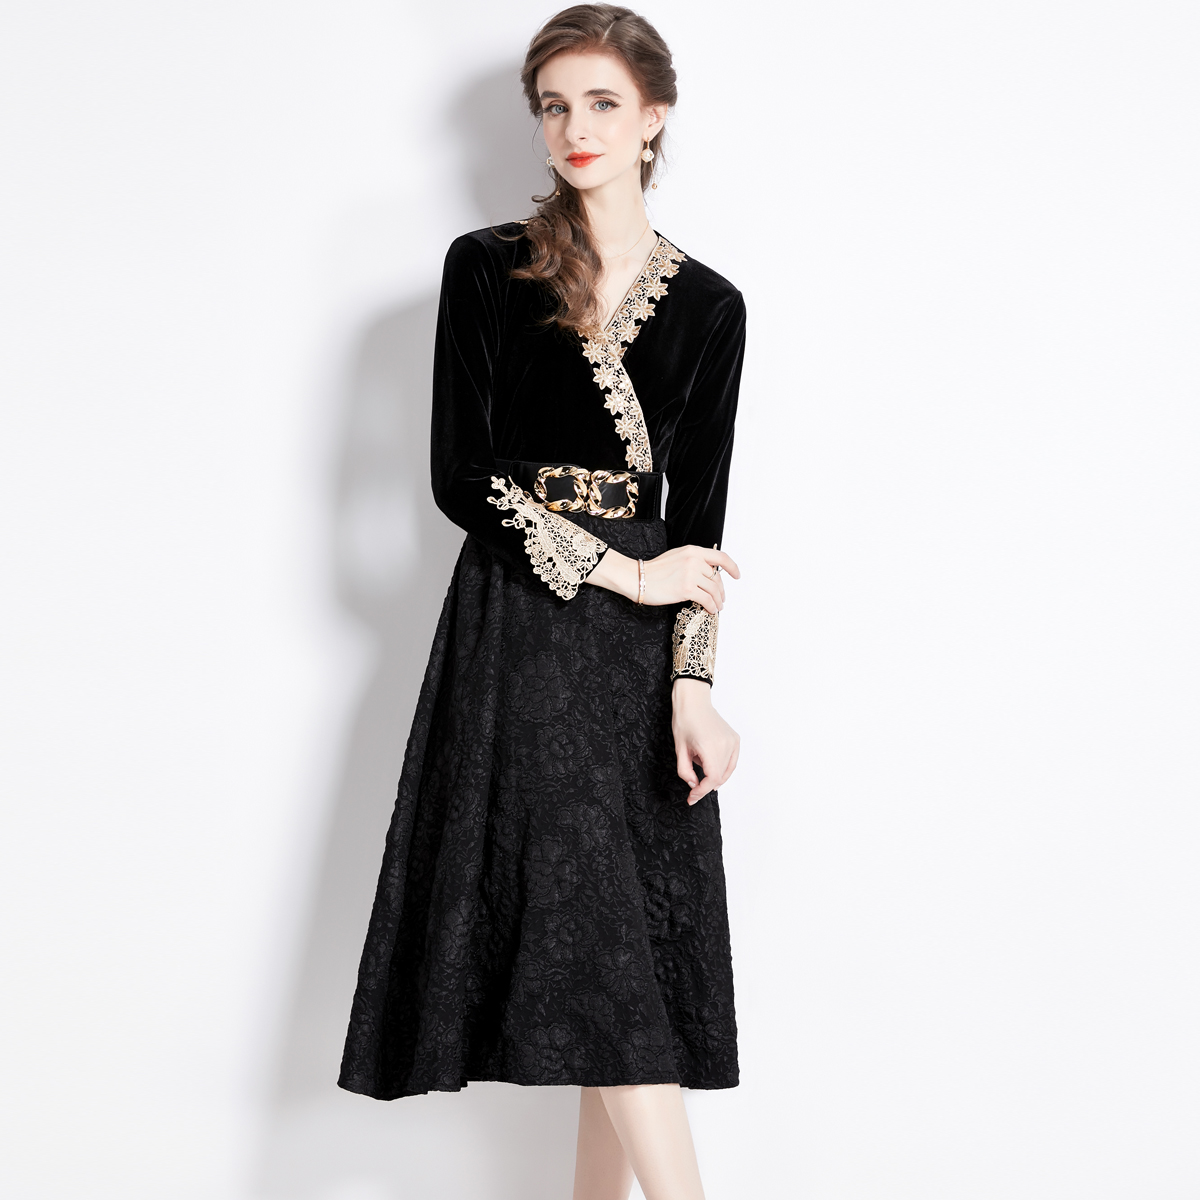 Jacquard velvet retro lace dress for women